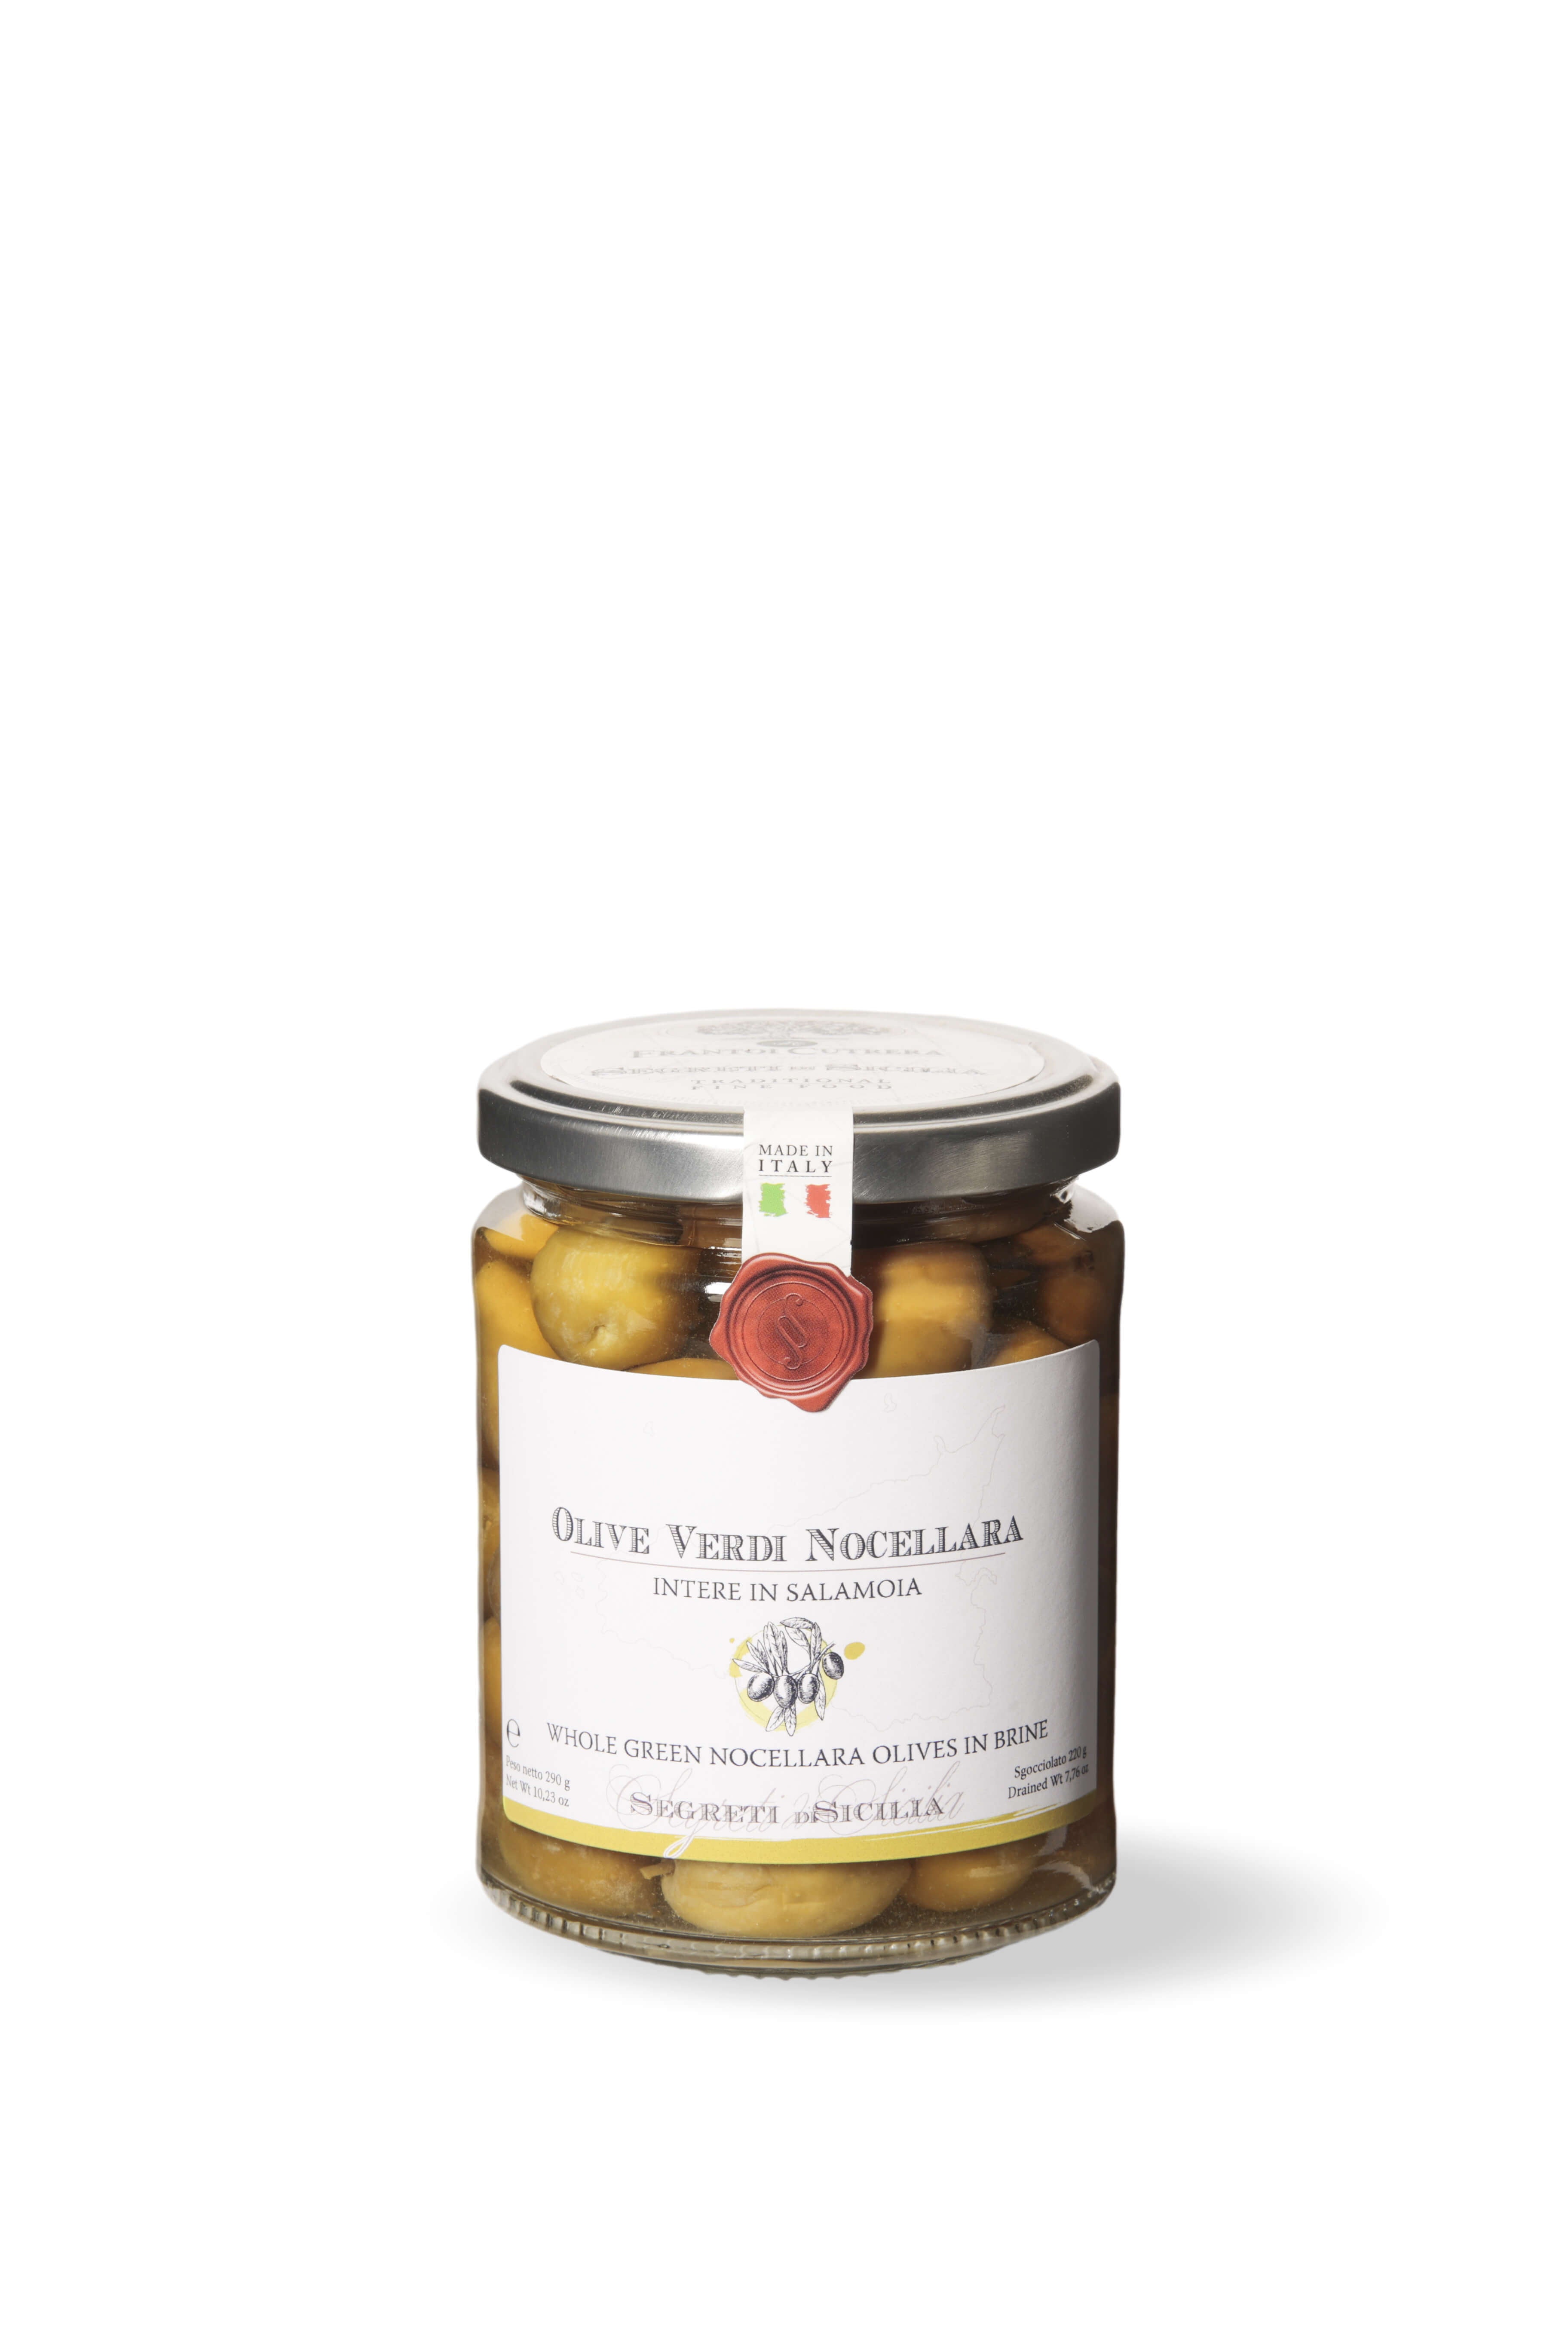 Olive verdi Nocellara intere in salamoia – Segreti di Sicilia